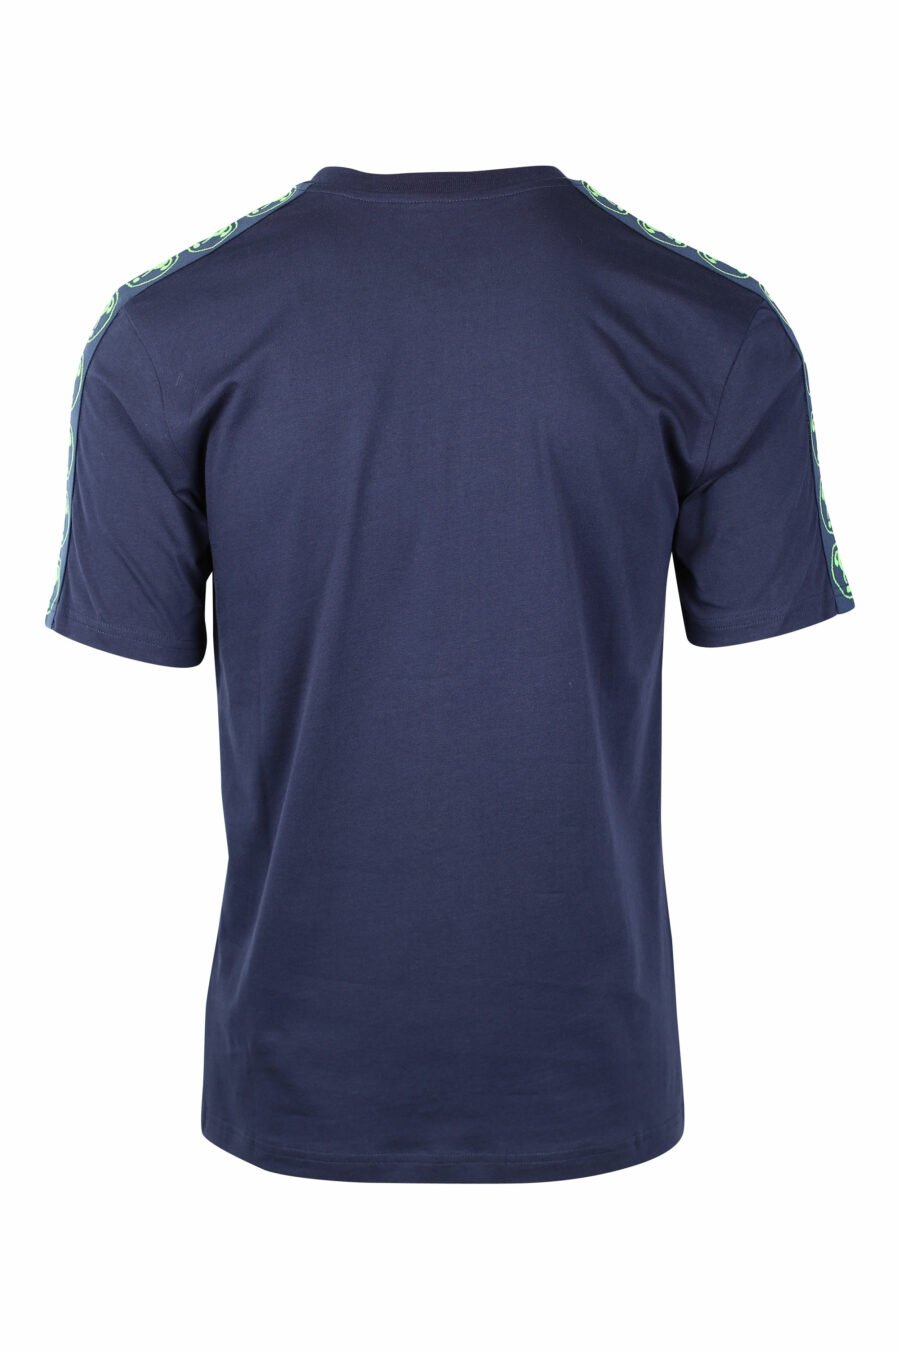 T-shirt bleu foncé avec le mini logo de la double question en vert - IMG 1443